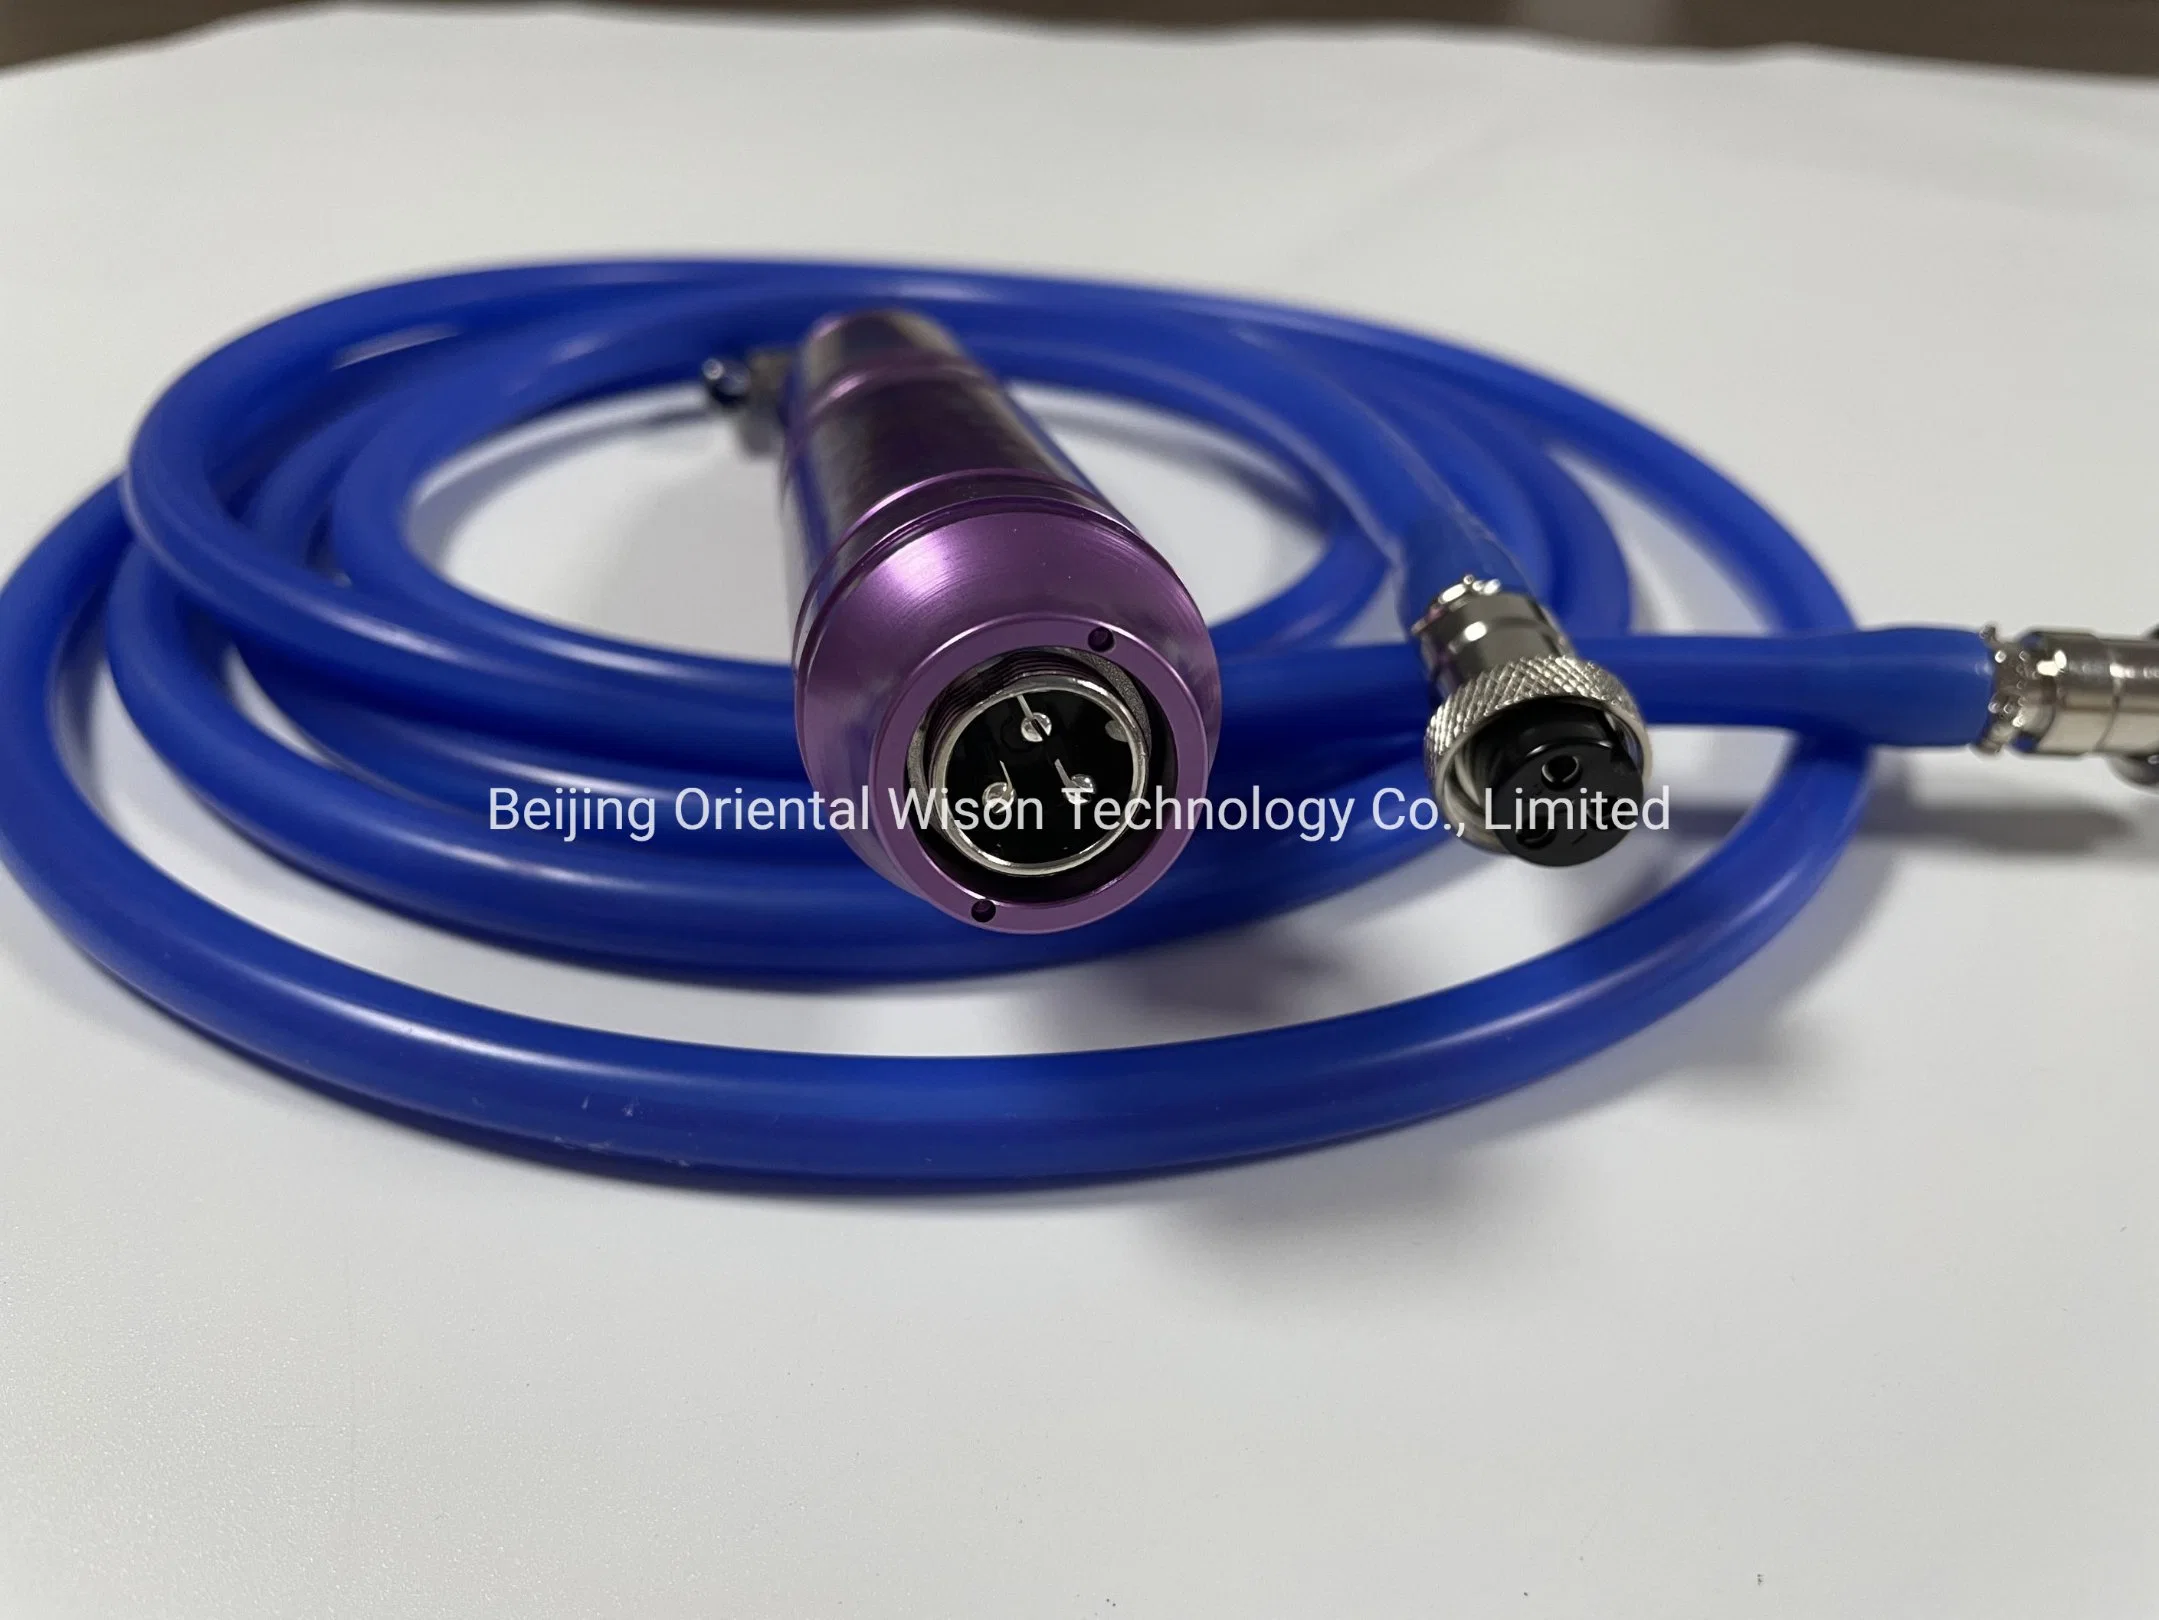 Portátil de la fábrica de equipos de la liposucción la liposucción asistida Dispositivo de vibración de la aguja de la cánula de liposucción